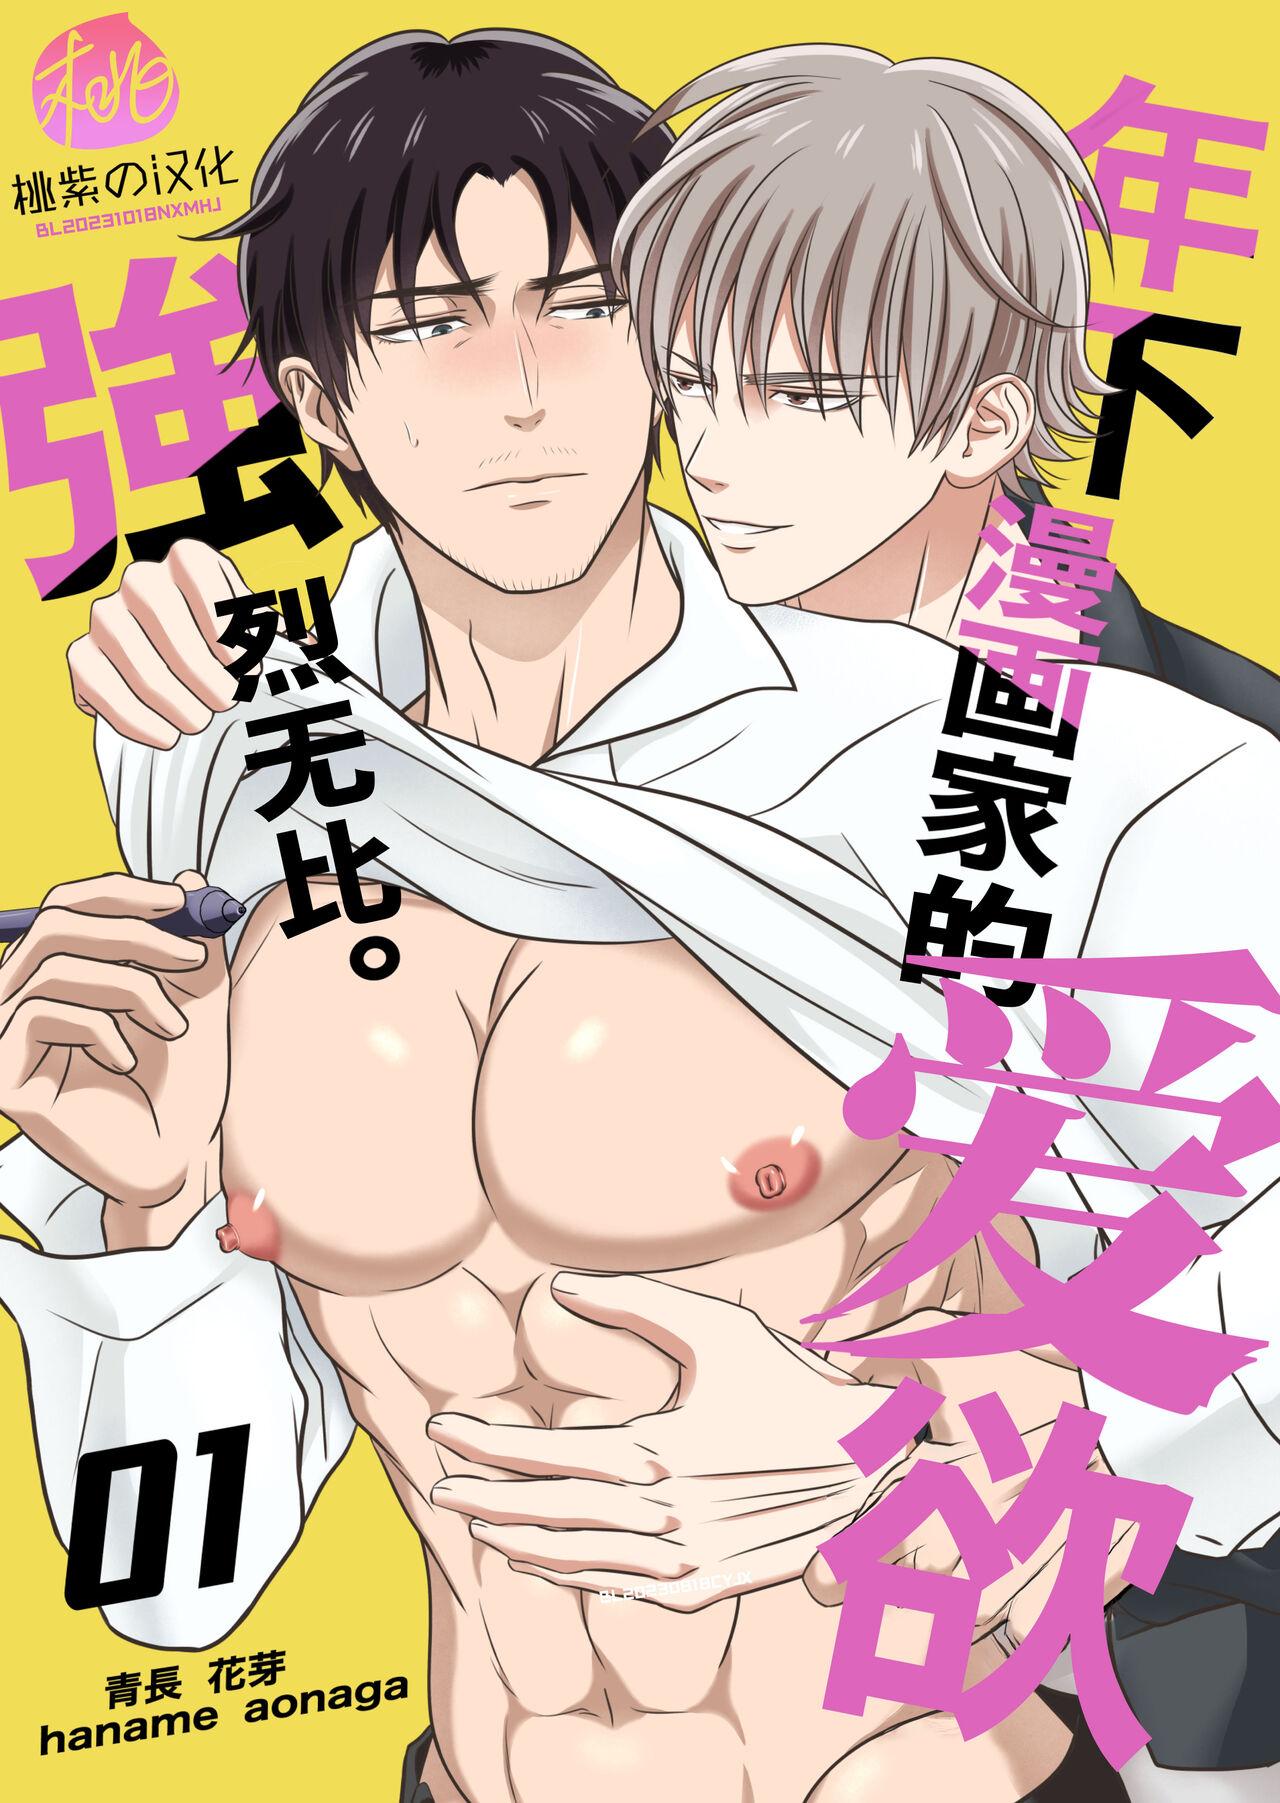 Sex Party Toshishita mangakka no ai ga tsuyo sugiru. 01 | 年下漫画家的爱欲强烈无比。第1卷 - Original Femdom Porn - Page 1